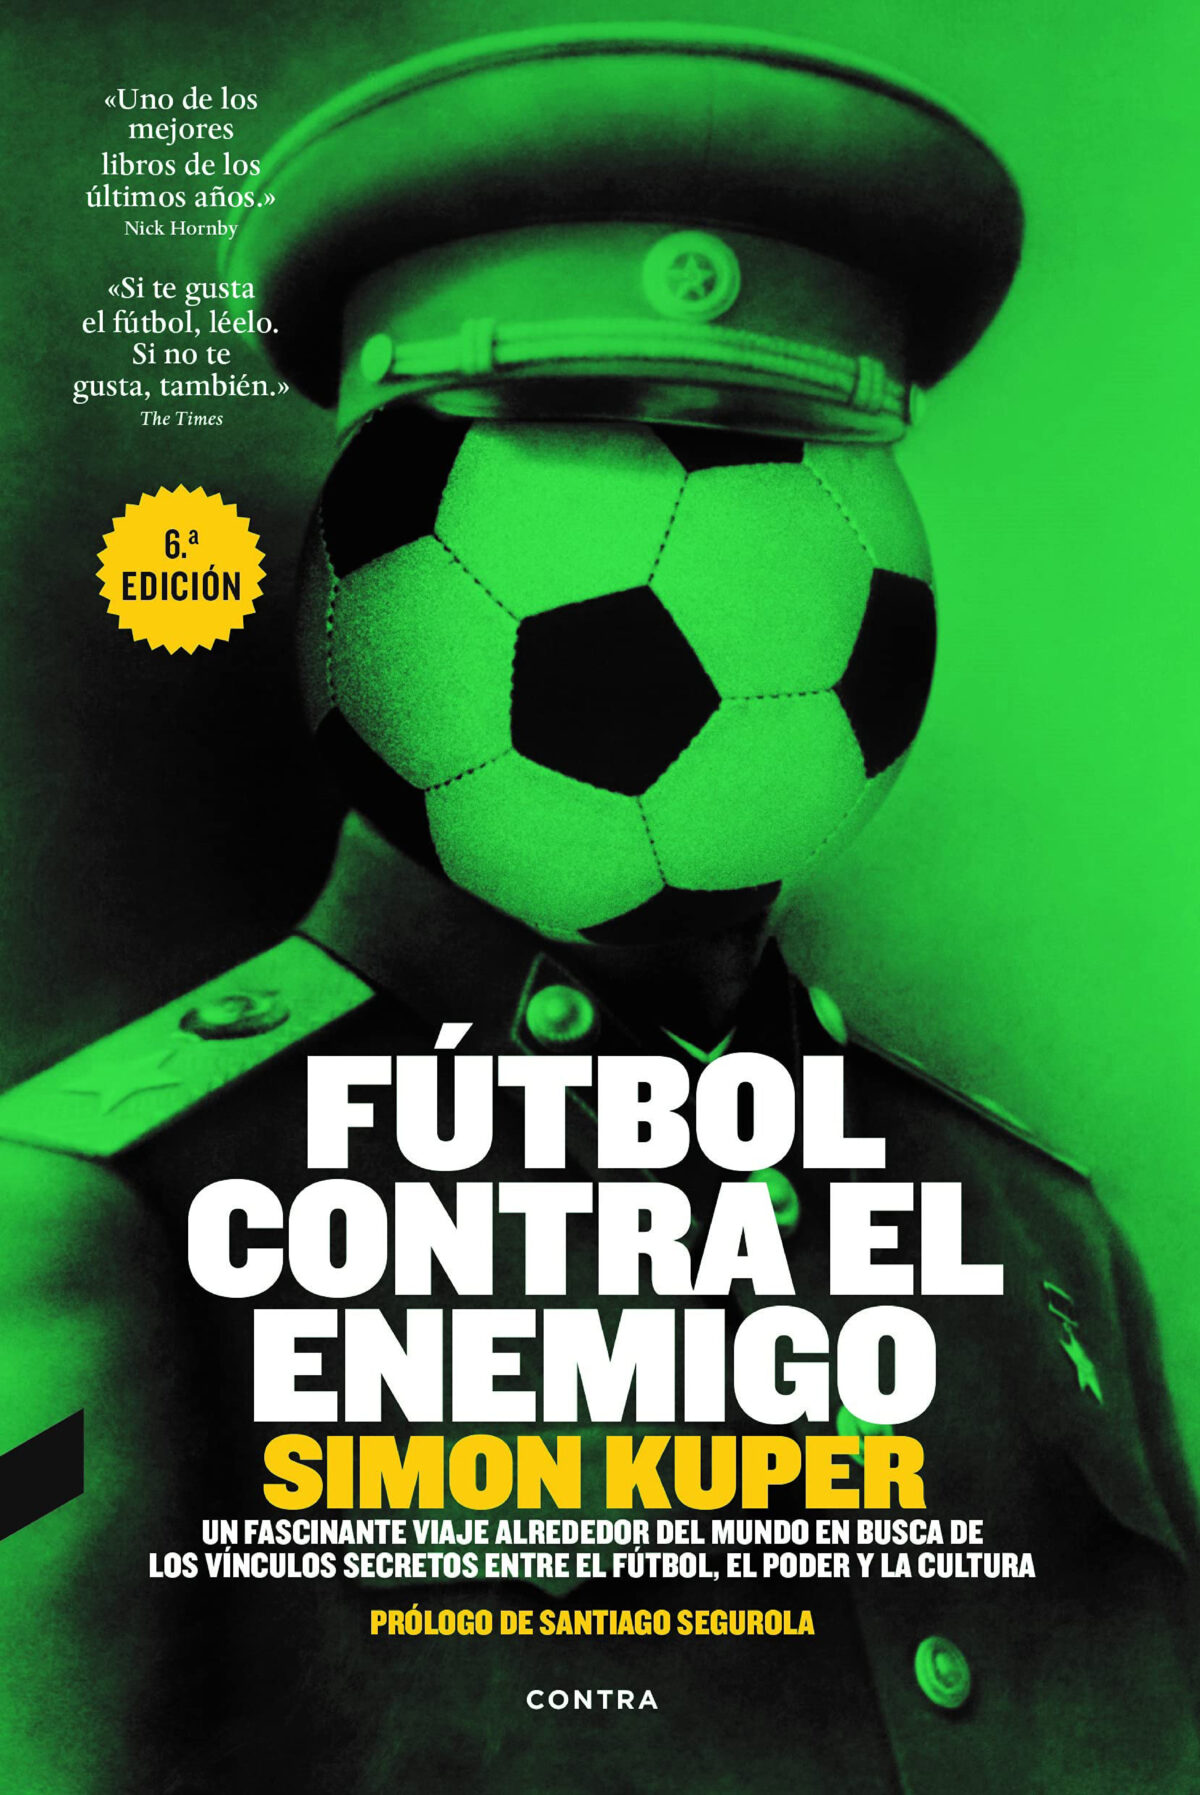 Leer y golear: 11 libros de fútbol imprescindibles para verdaderos amantes  del fútbol - Revista Diners